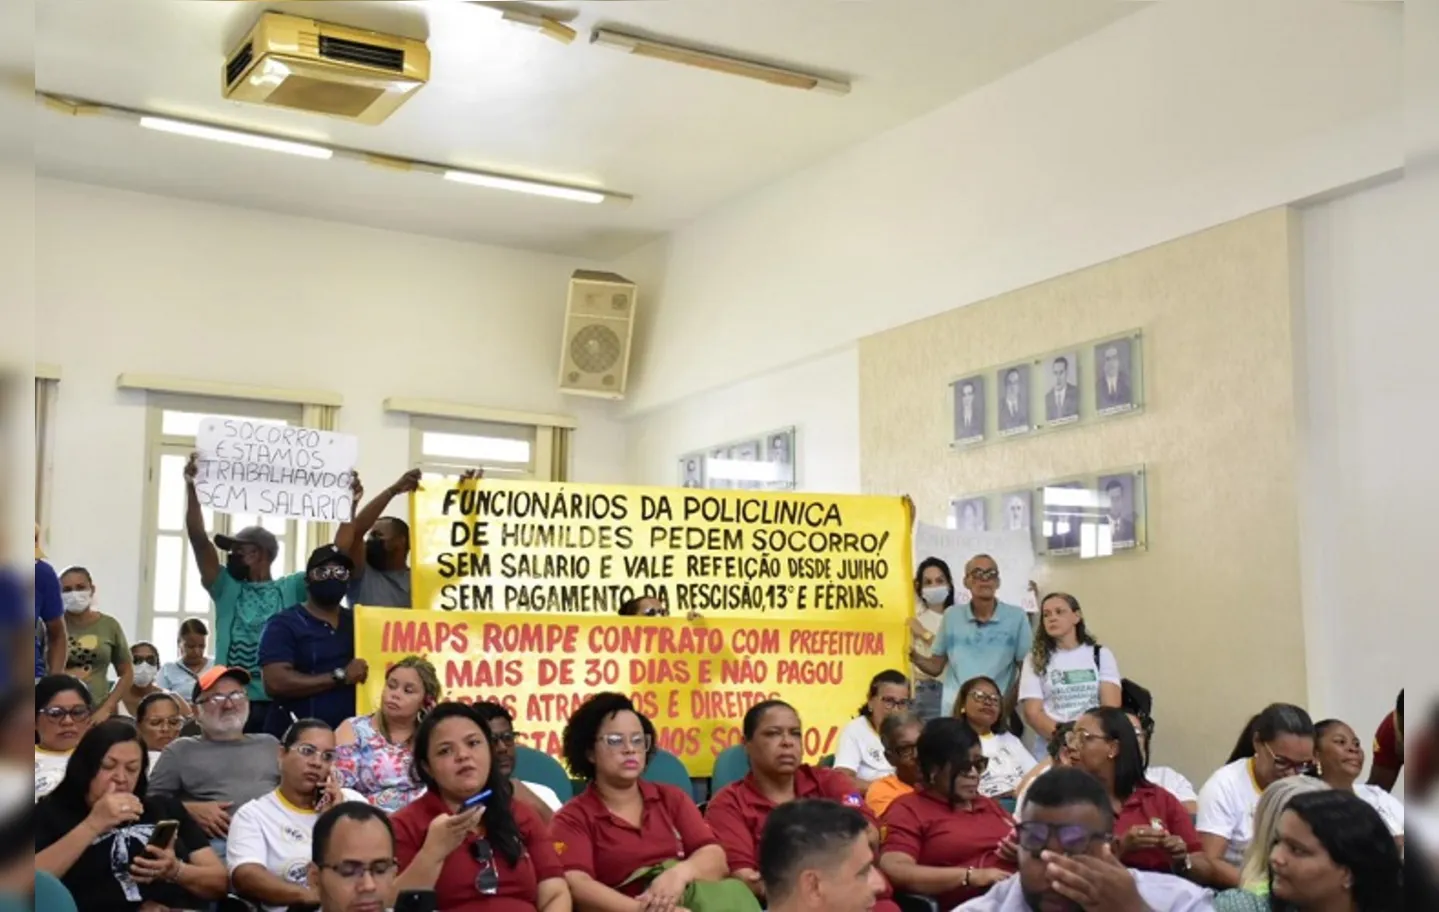 Grupo de colaboradores fez mobilização e pediu apoio do Legislativo na resolução dos problemas